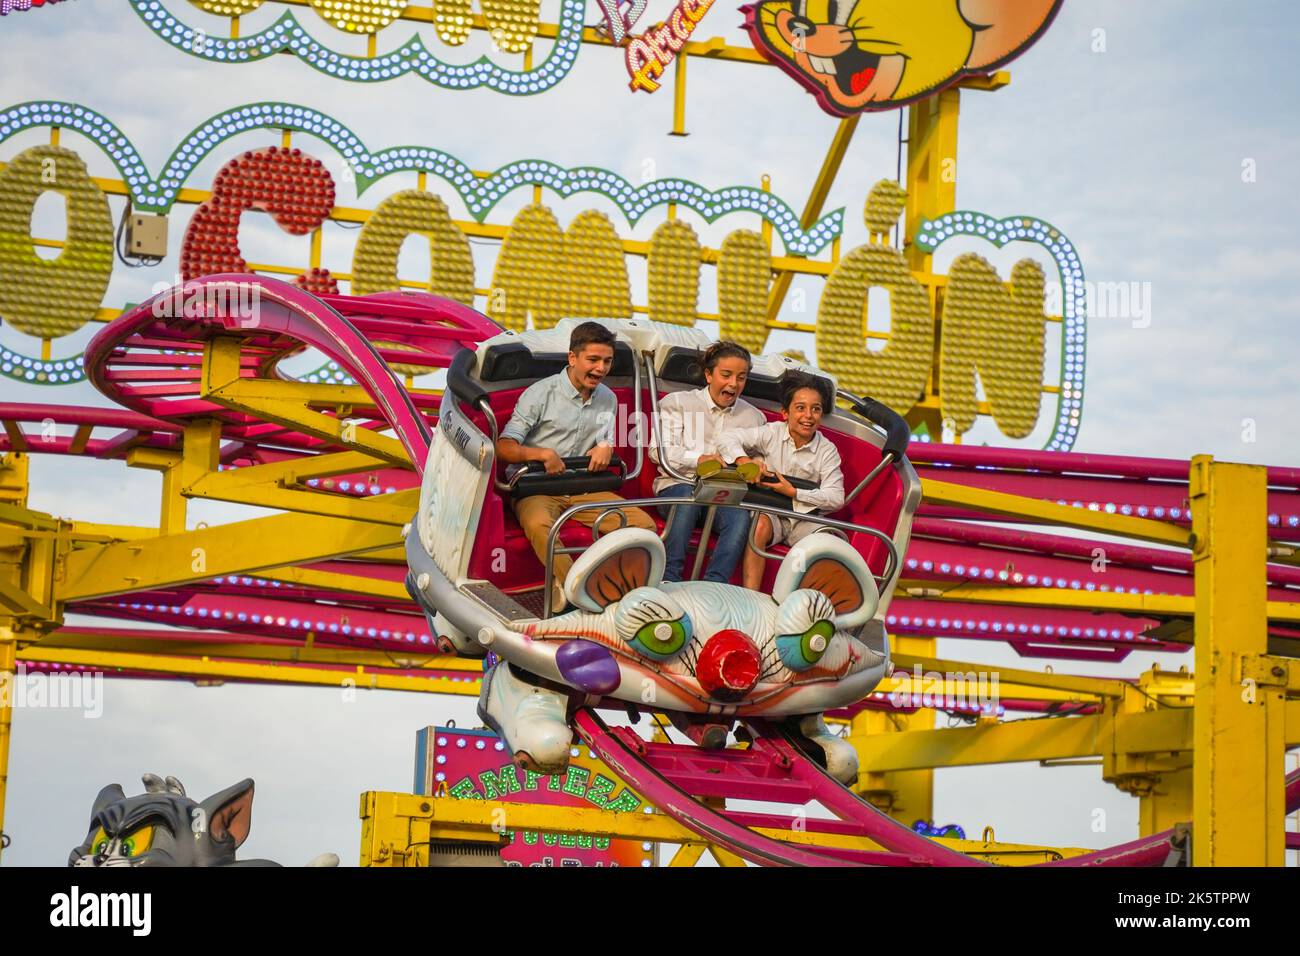 Tre adolescenti sul punto più alto, spaventato nel giro in macchina delle montagne russe sulla fiera annuale. Funfair. Spagna. Foto Stock